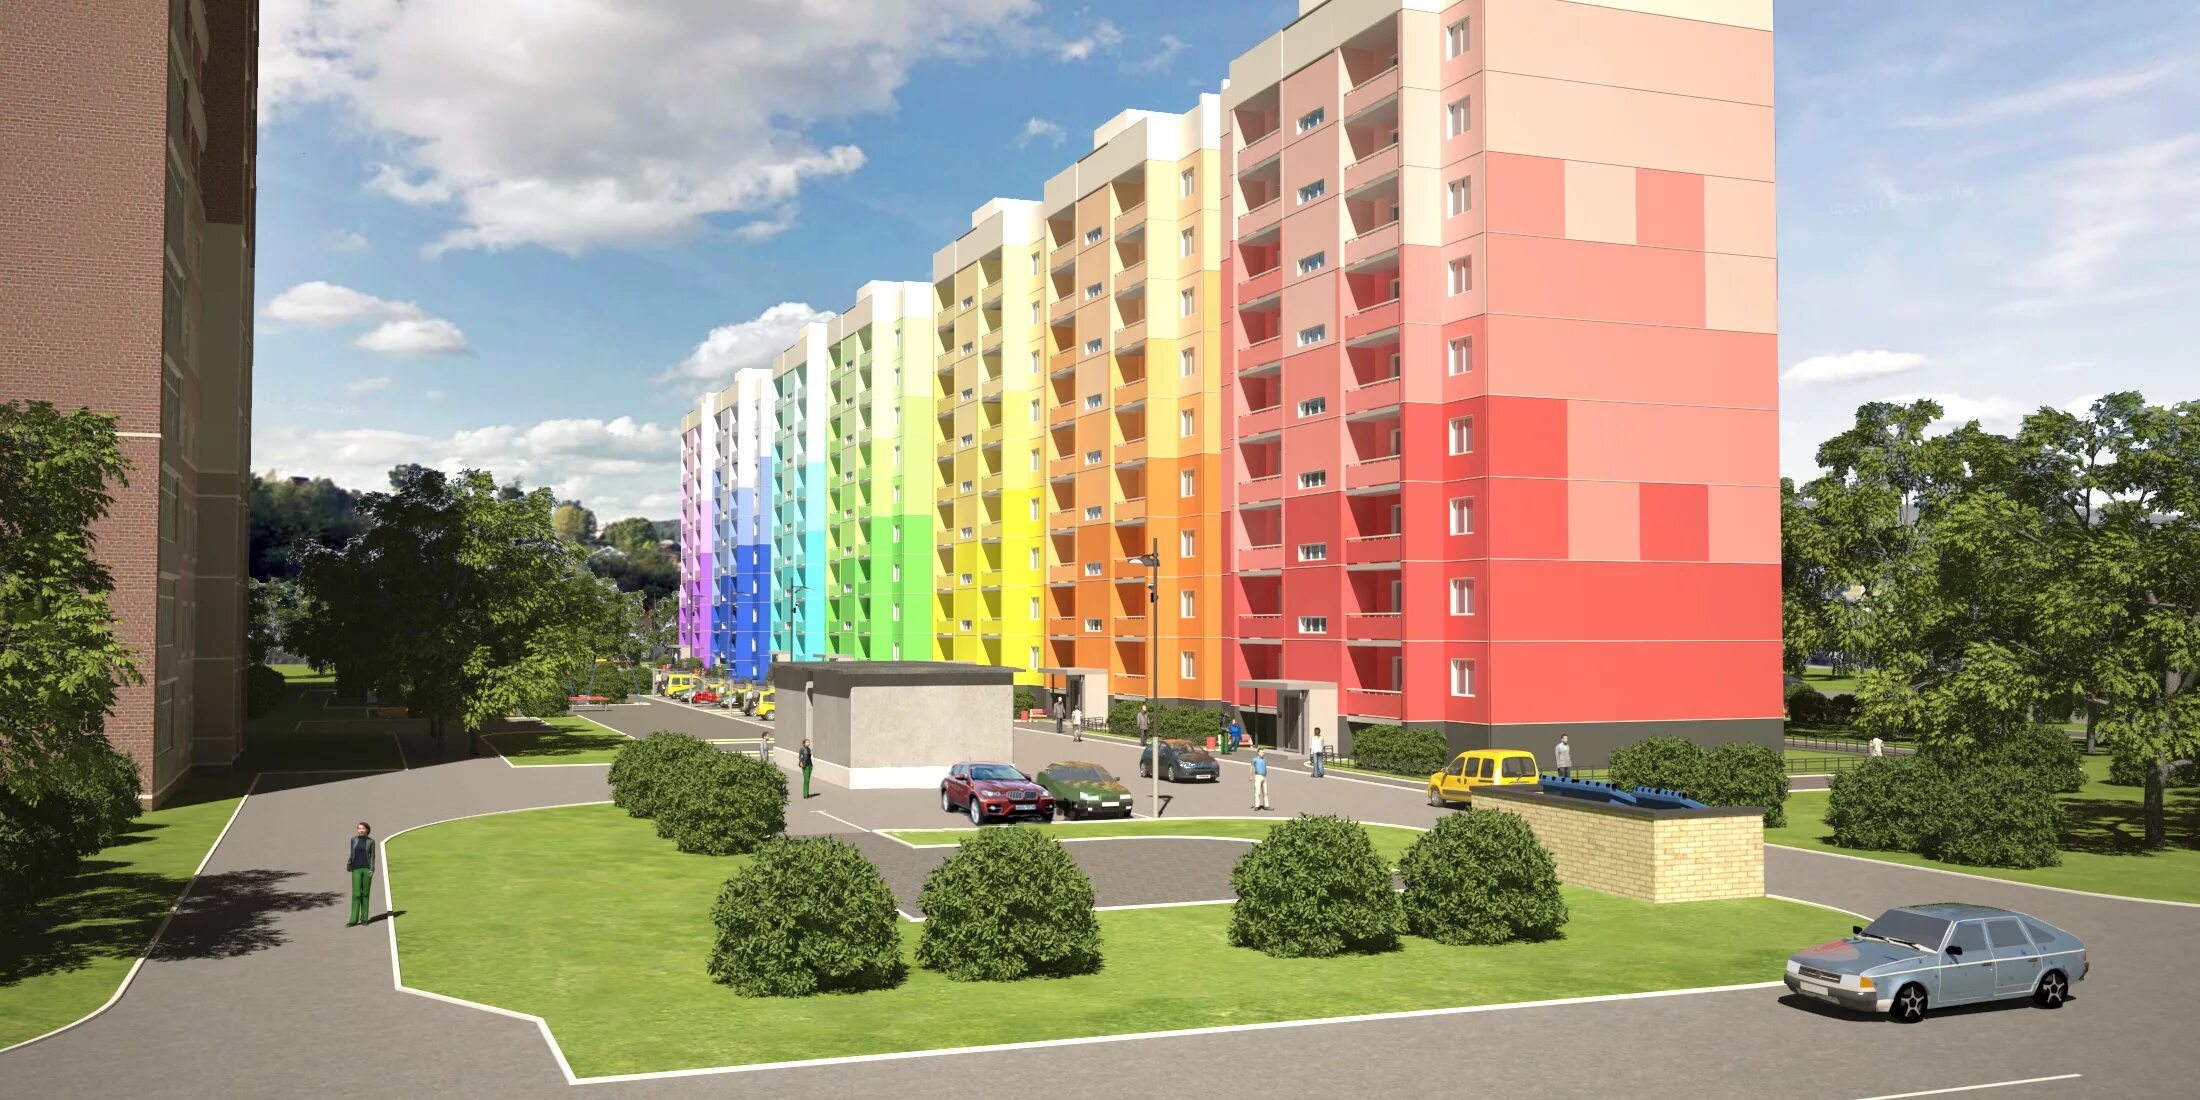 Цветная 9. Цветовое решение фасадов жилых домов. Фасады многоэтажных домов цветовые решения. Цветовое решение фасадов многоэтажных жилых домов. Цветные фасады многоэтажных домов.